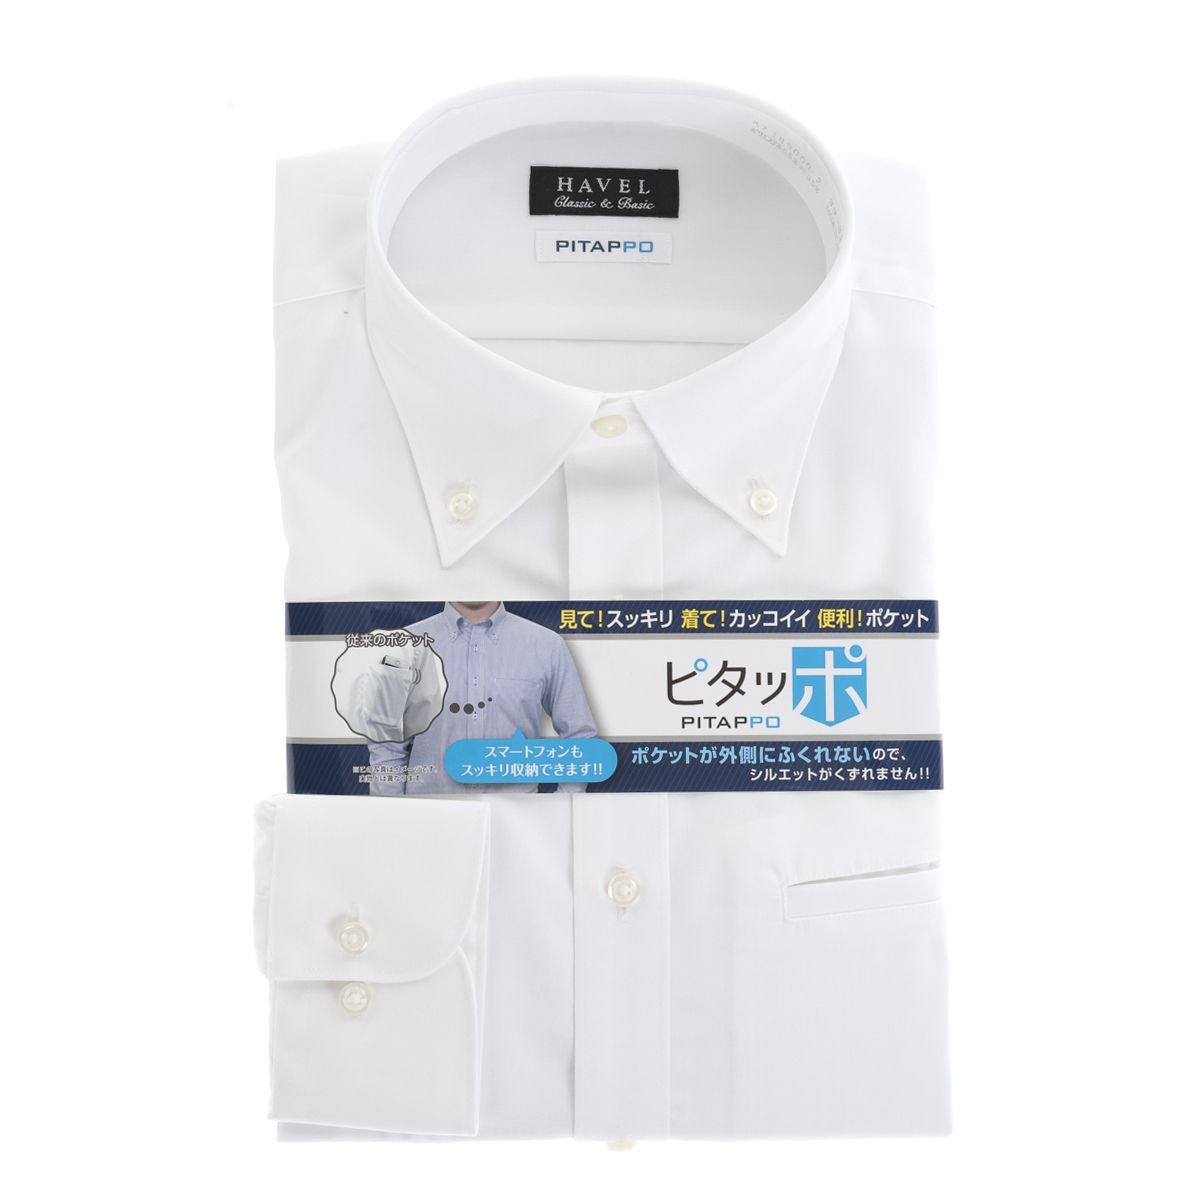 【ボタンダウン】, 大容量胸ポケ「ピタッポ」, 白シャツ 形態安定 長袖